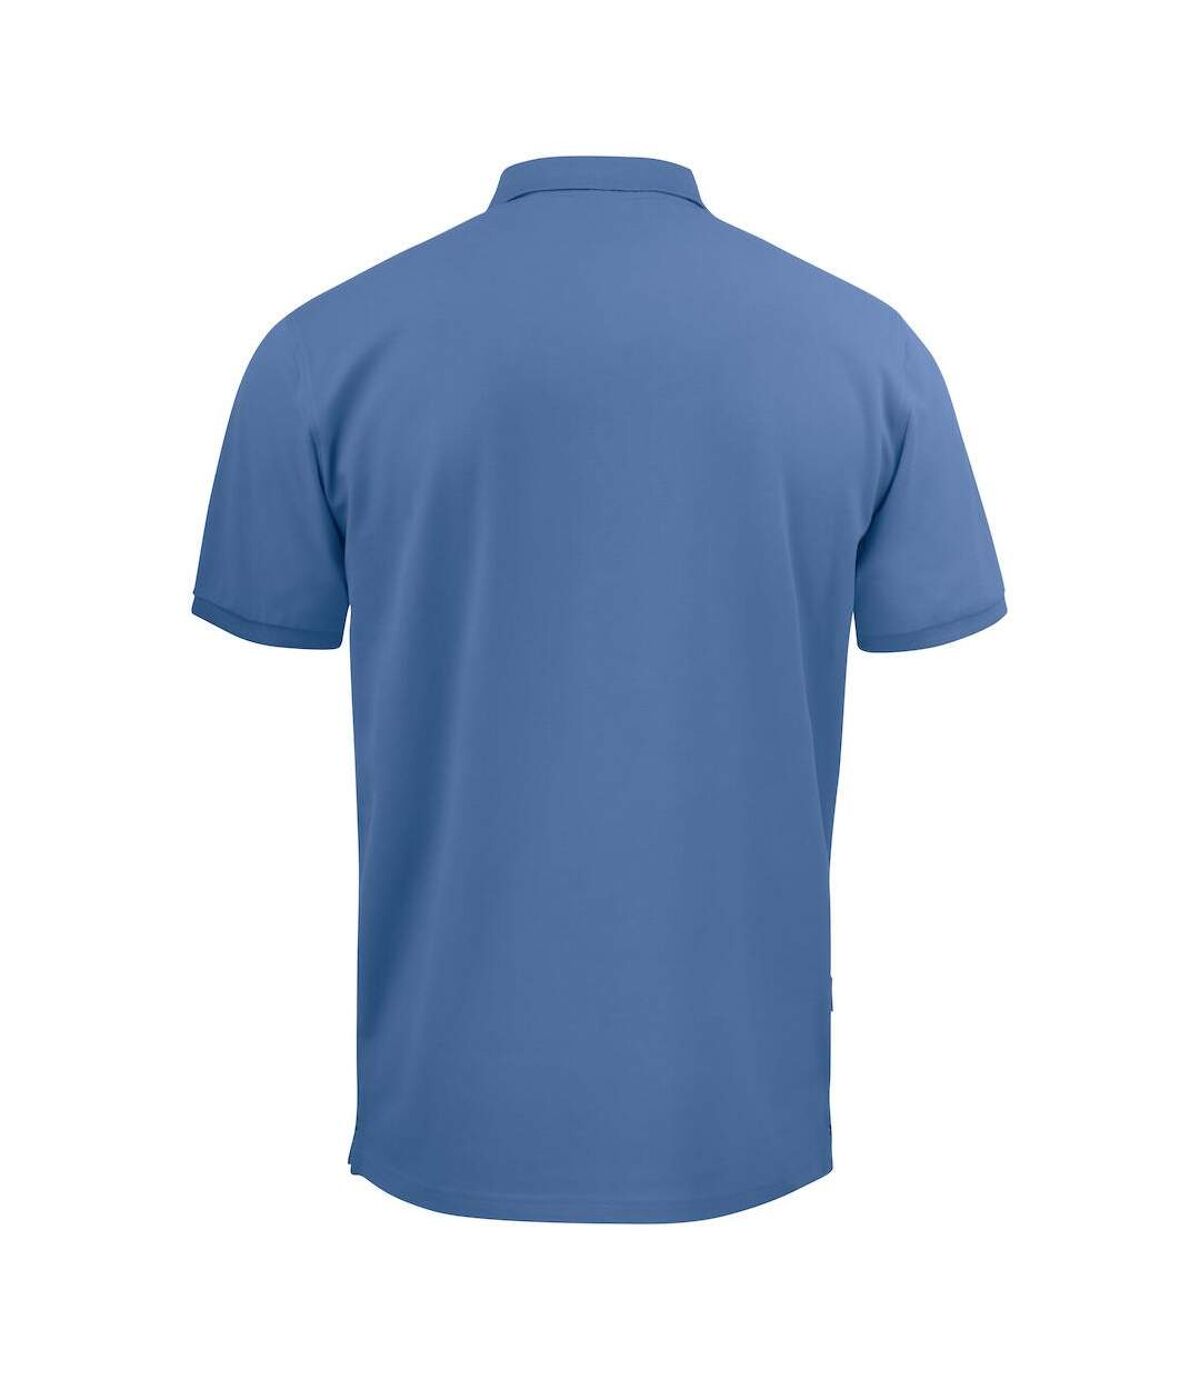 Projob Mens Pique Polo Shirt (Sky Blue)